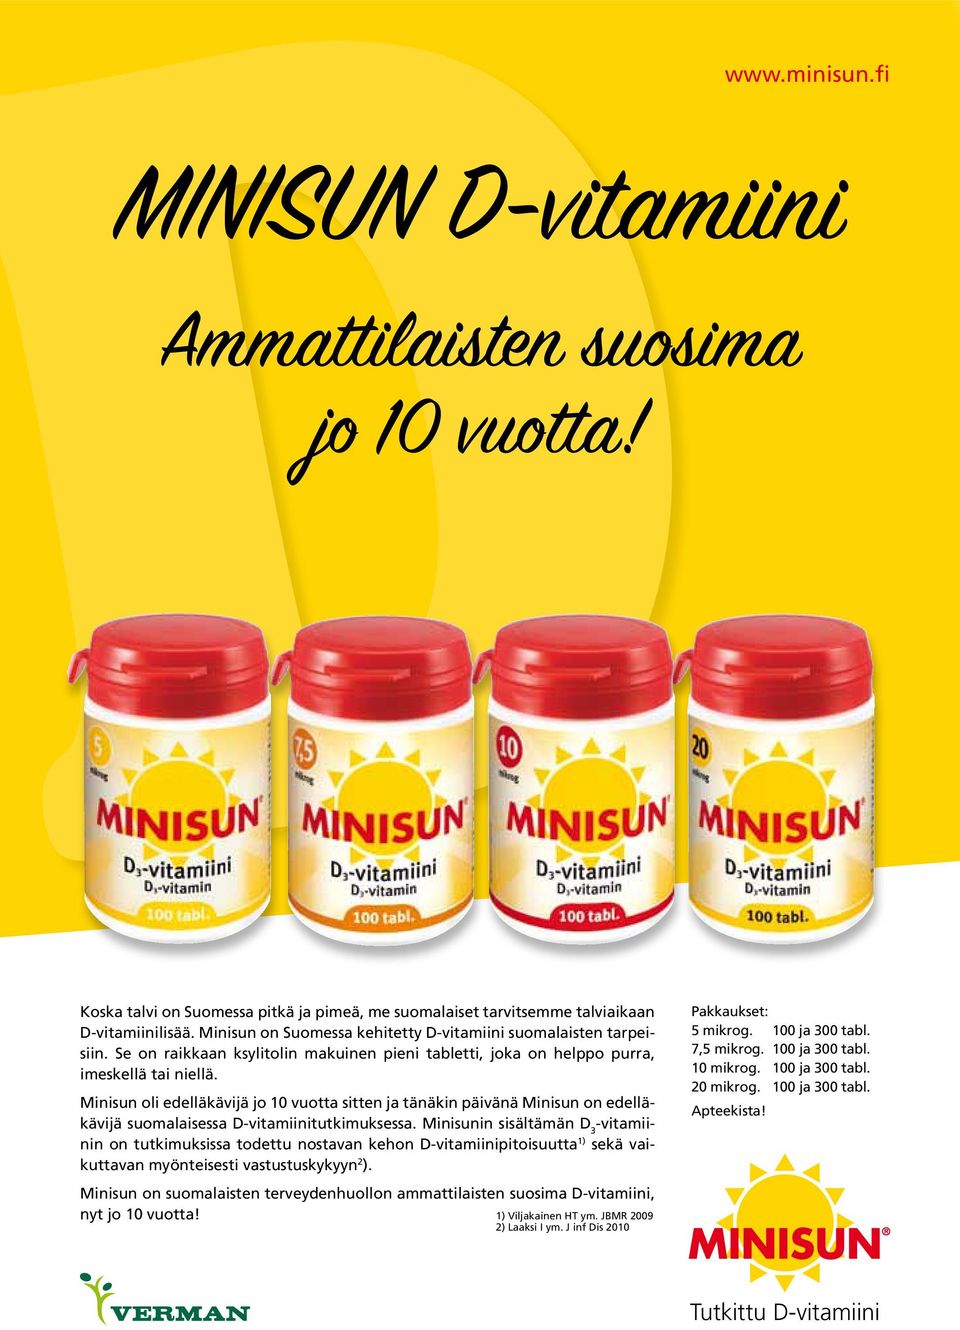 Minisun oli edelläkävijä jo 10 vuotta sitten ja tänäkin päivänä Minisun on edelläkävijä suomalaisessa D-vitamiinitutkimuksessa.